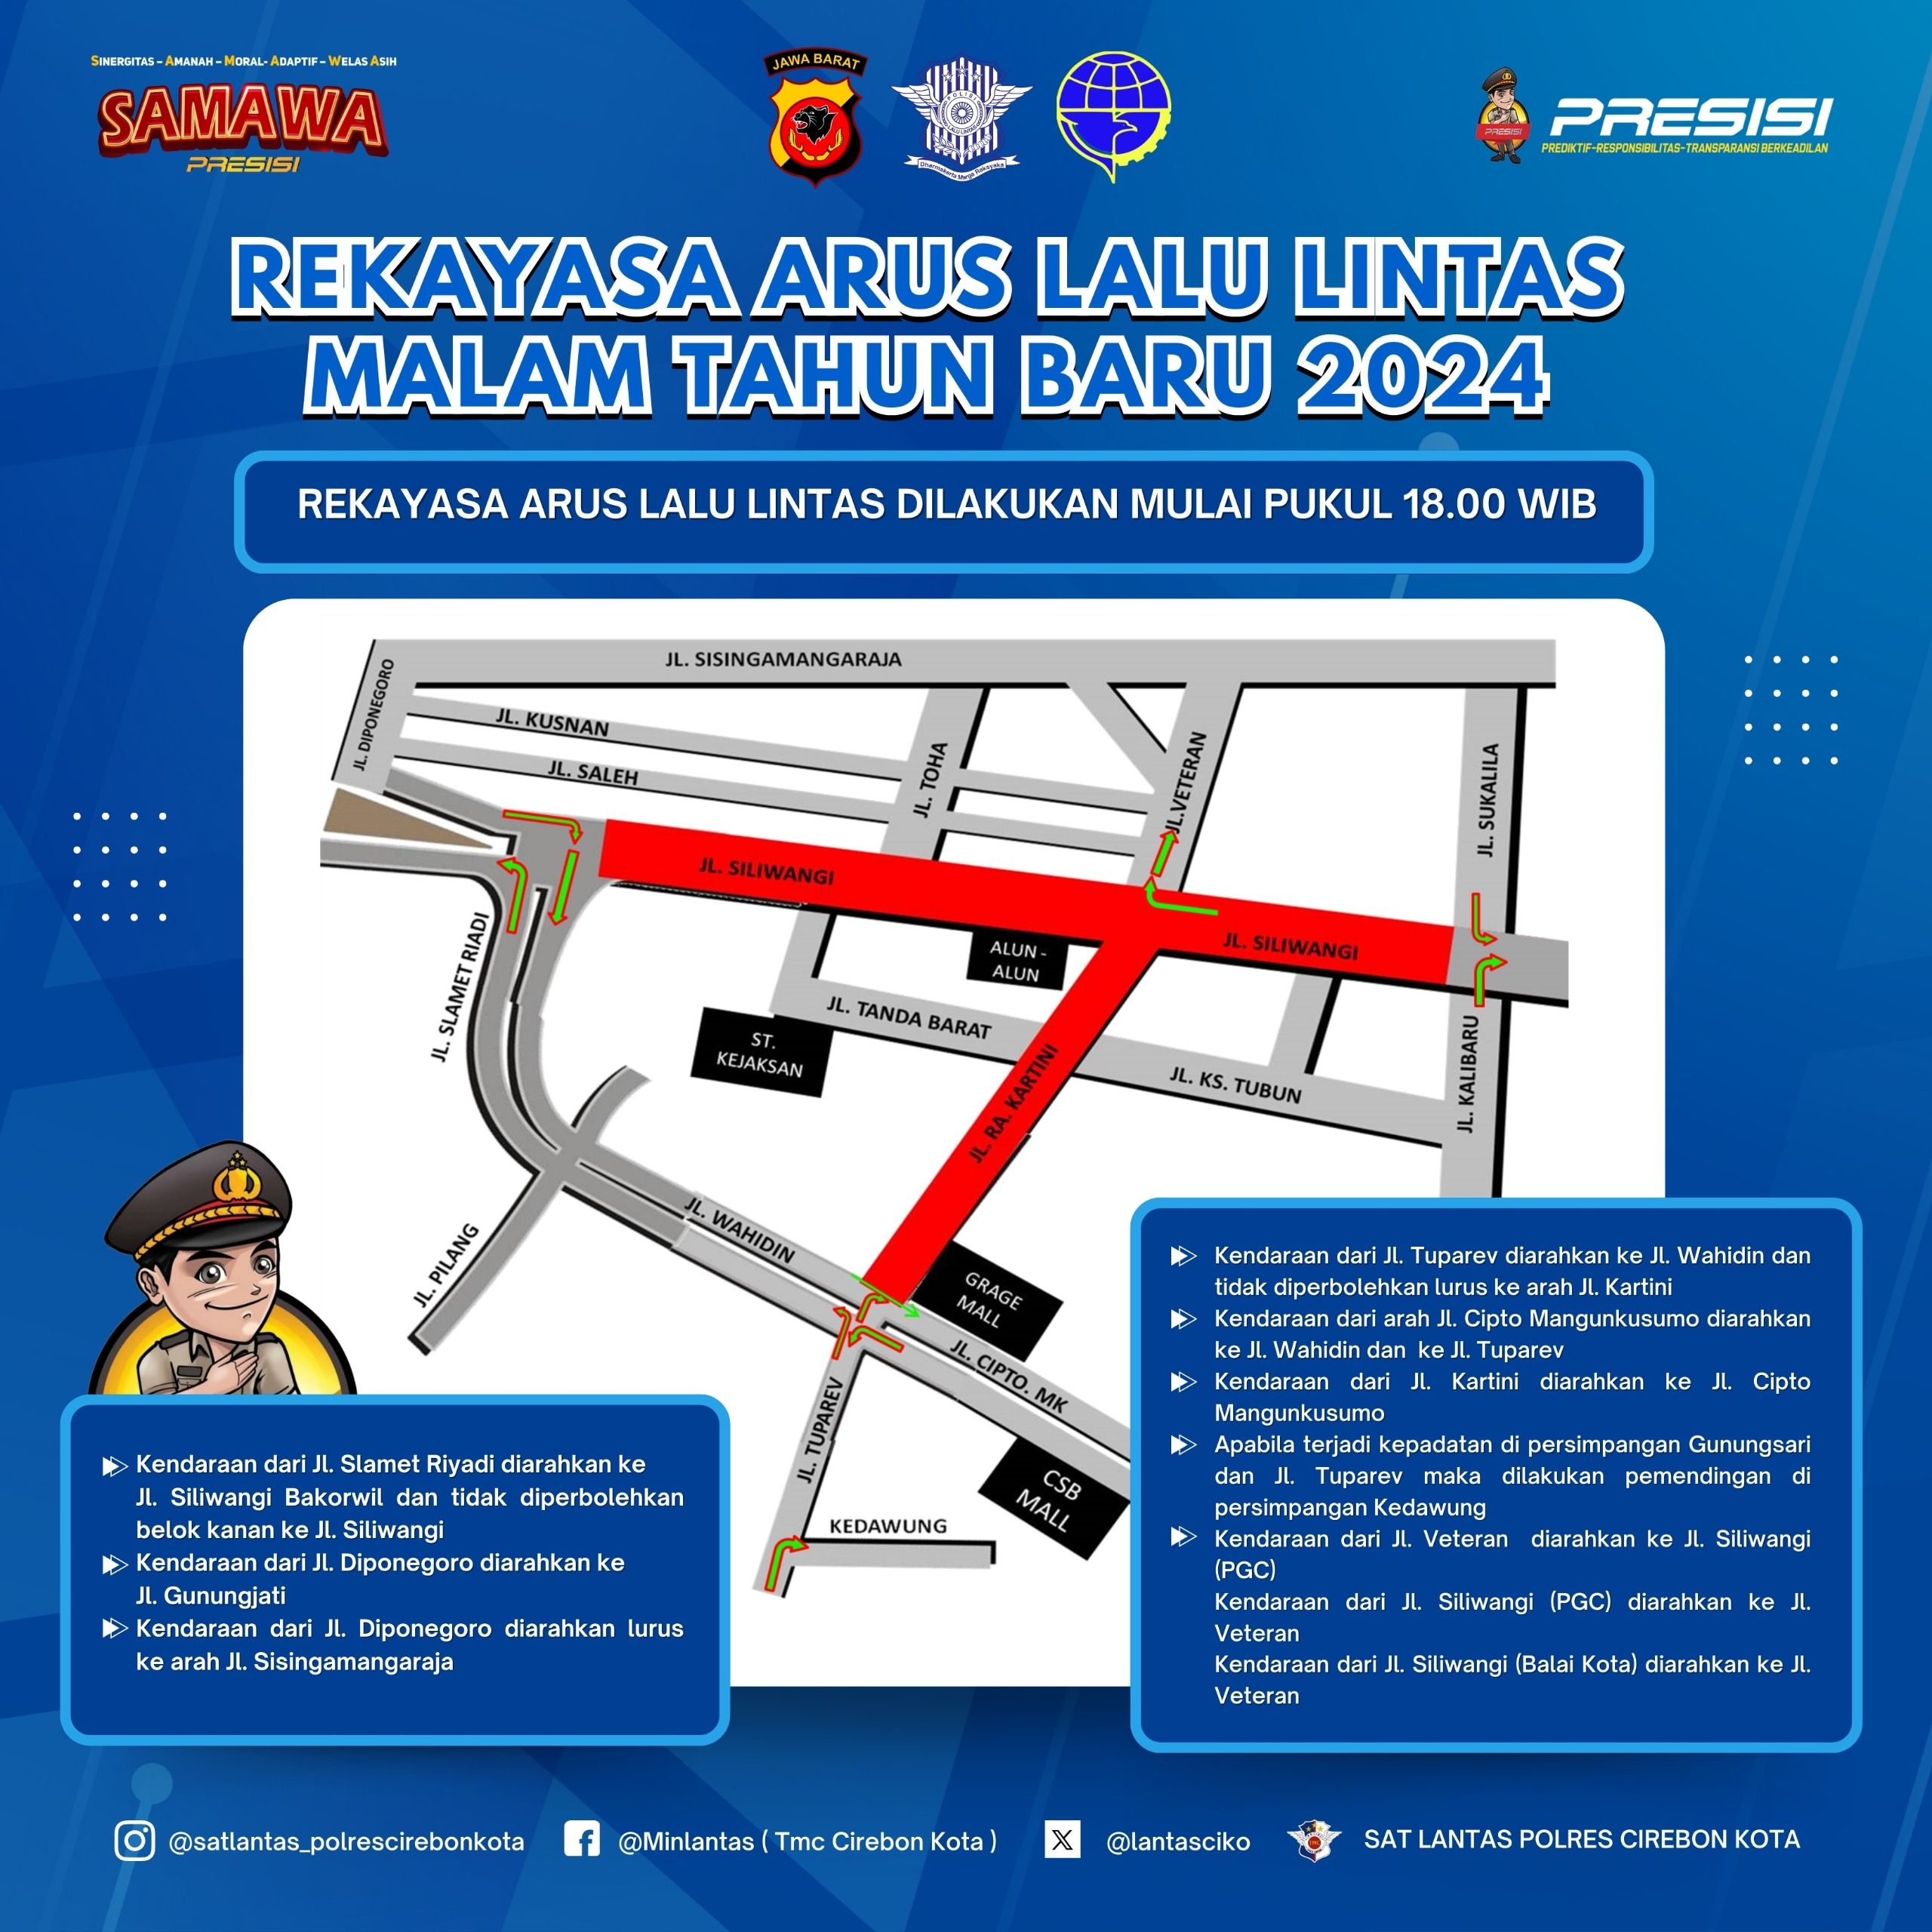 Rekayasa arus lalu lintas malam tahun baru 2024 di Kota Cirebon.*